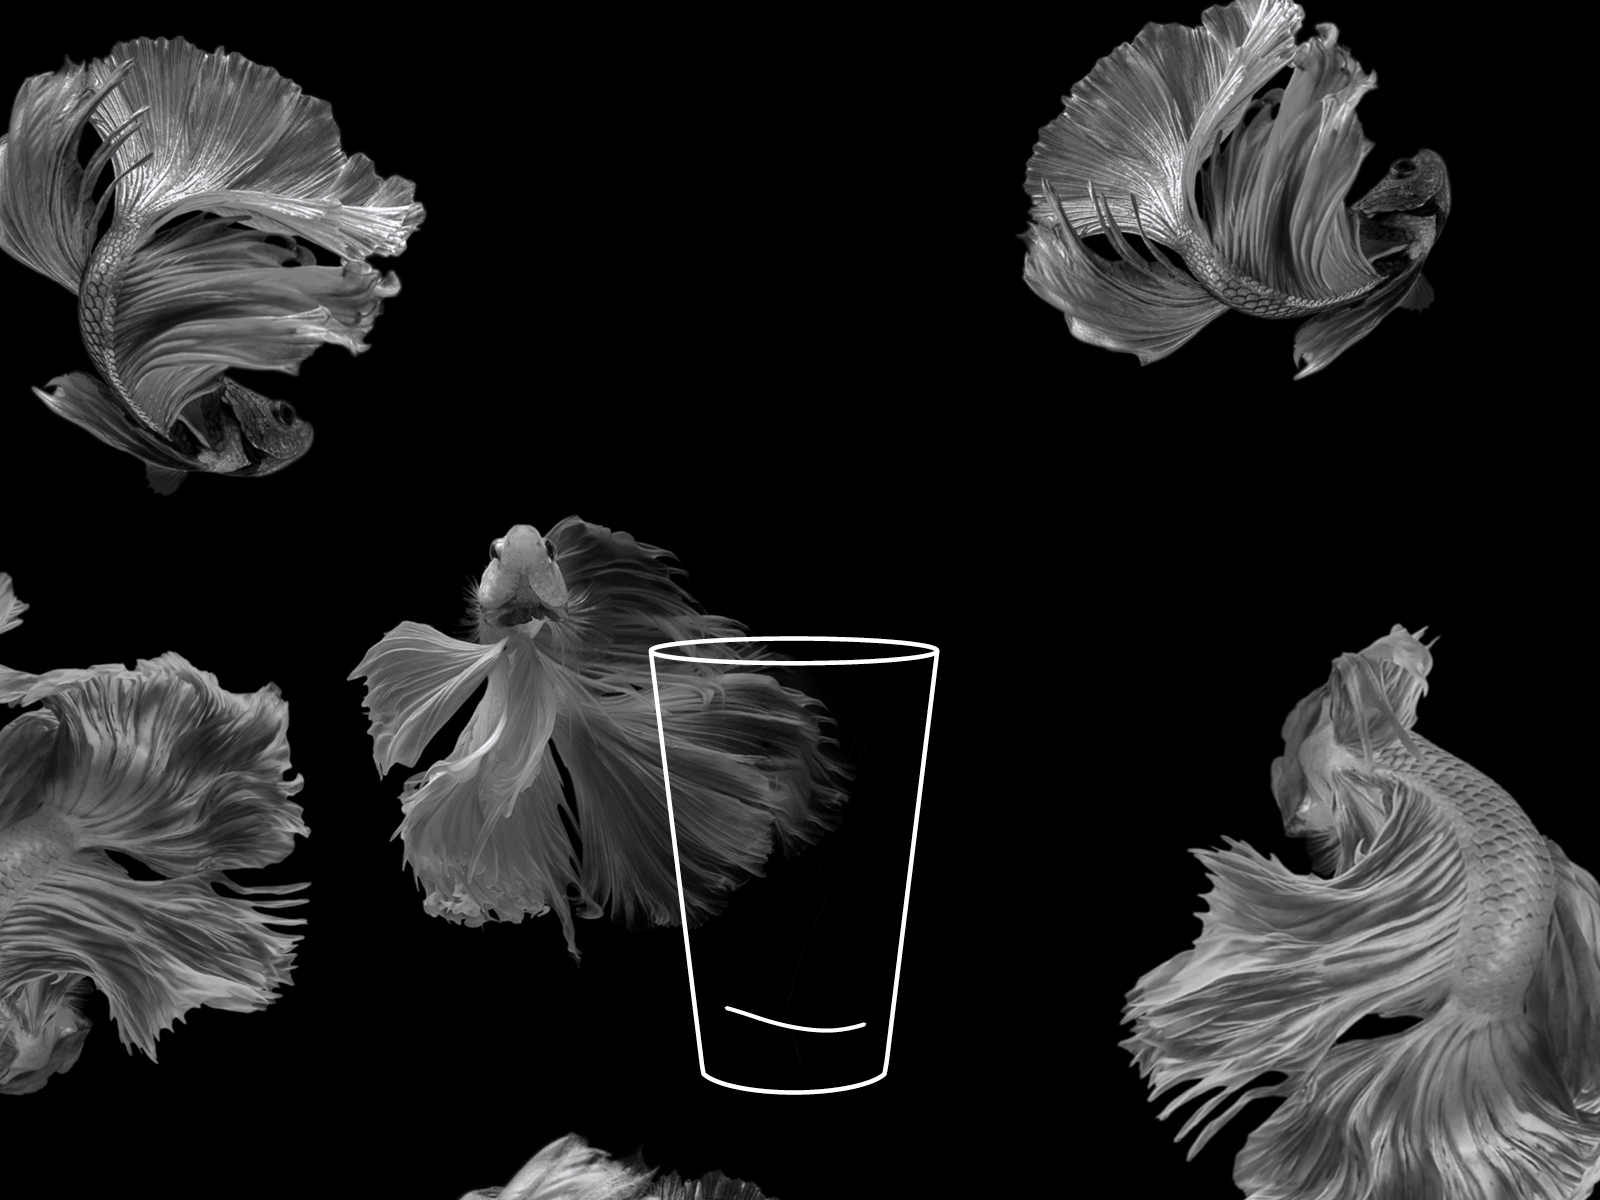 Ein leeres Glas steht vor einem schwarzen Hintergrund mit hellen, dekorativen Elementen.